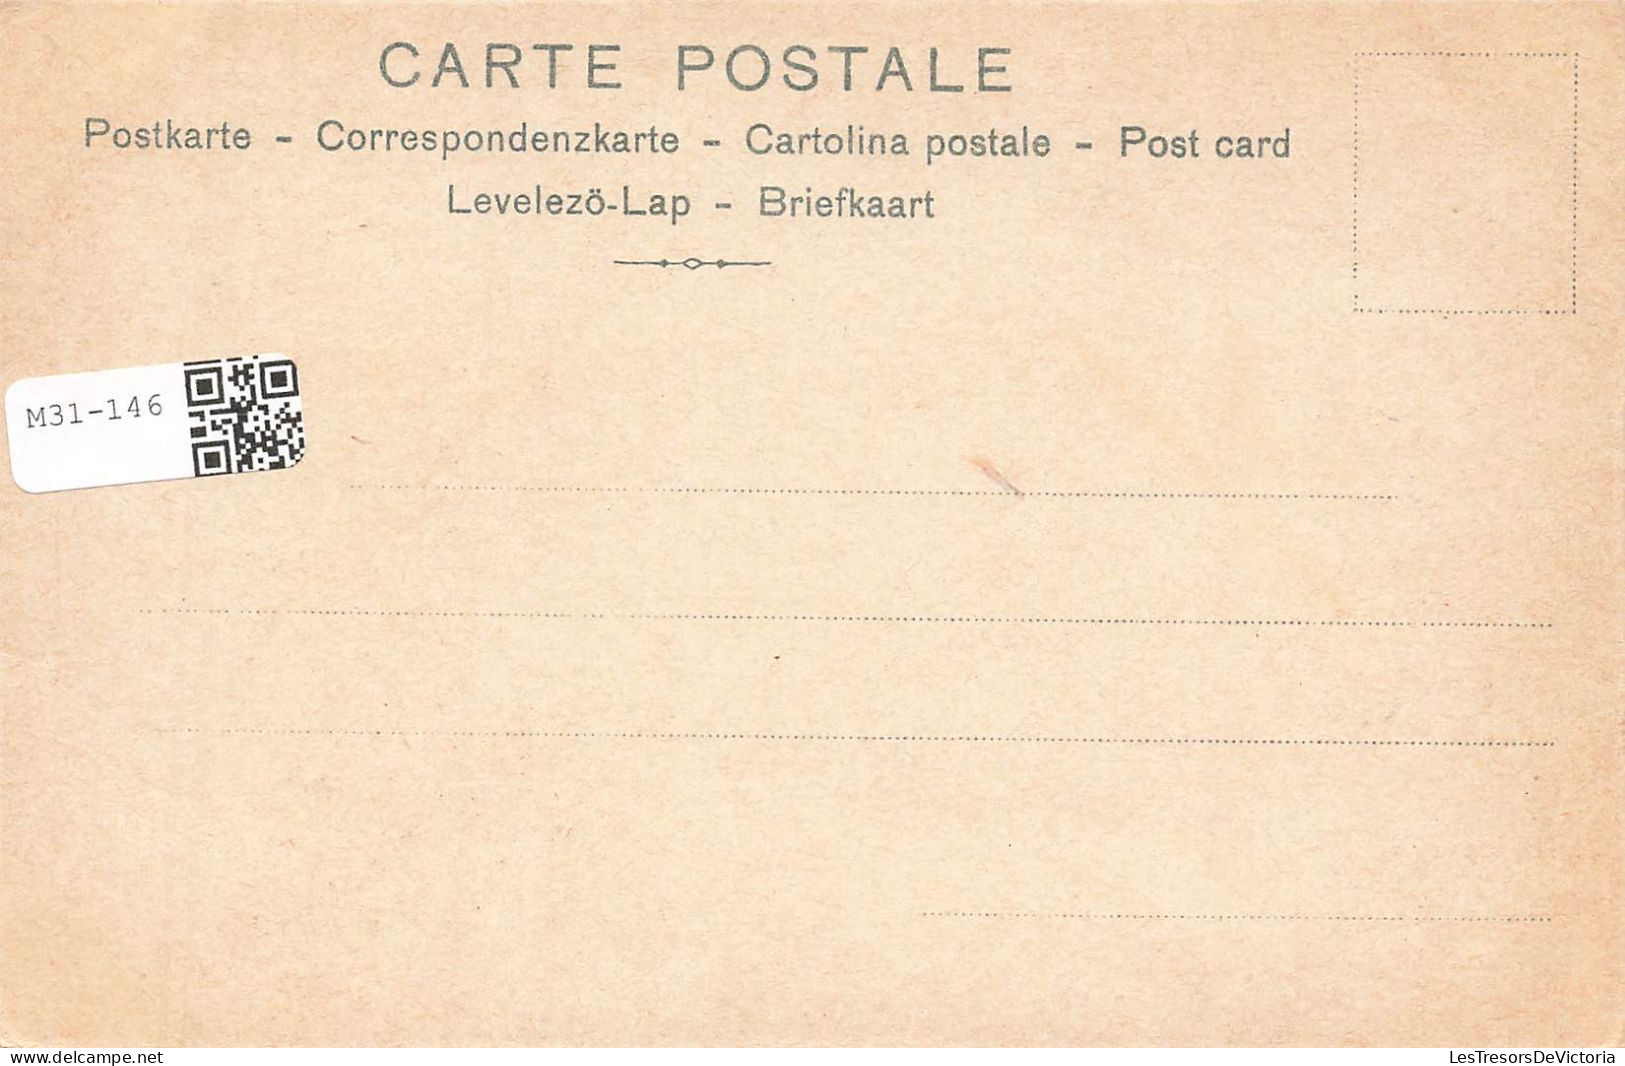 ILLUSTRATEUR NON SIGNE - Au Seuil De L’intimité Conjugale : La Chambre Nuptiale - Enfin Seuls - Carte Postale Ancienne - Voor 1900